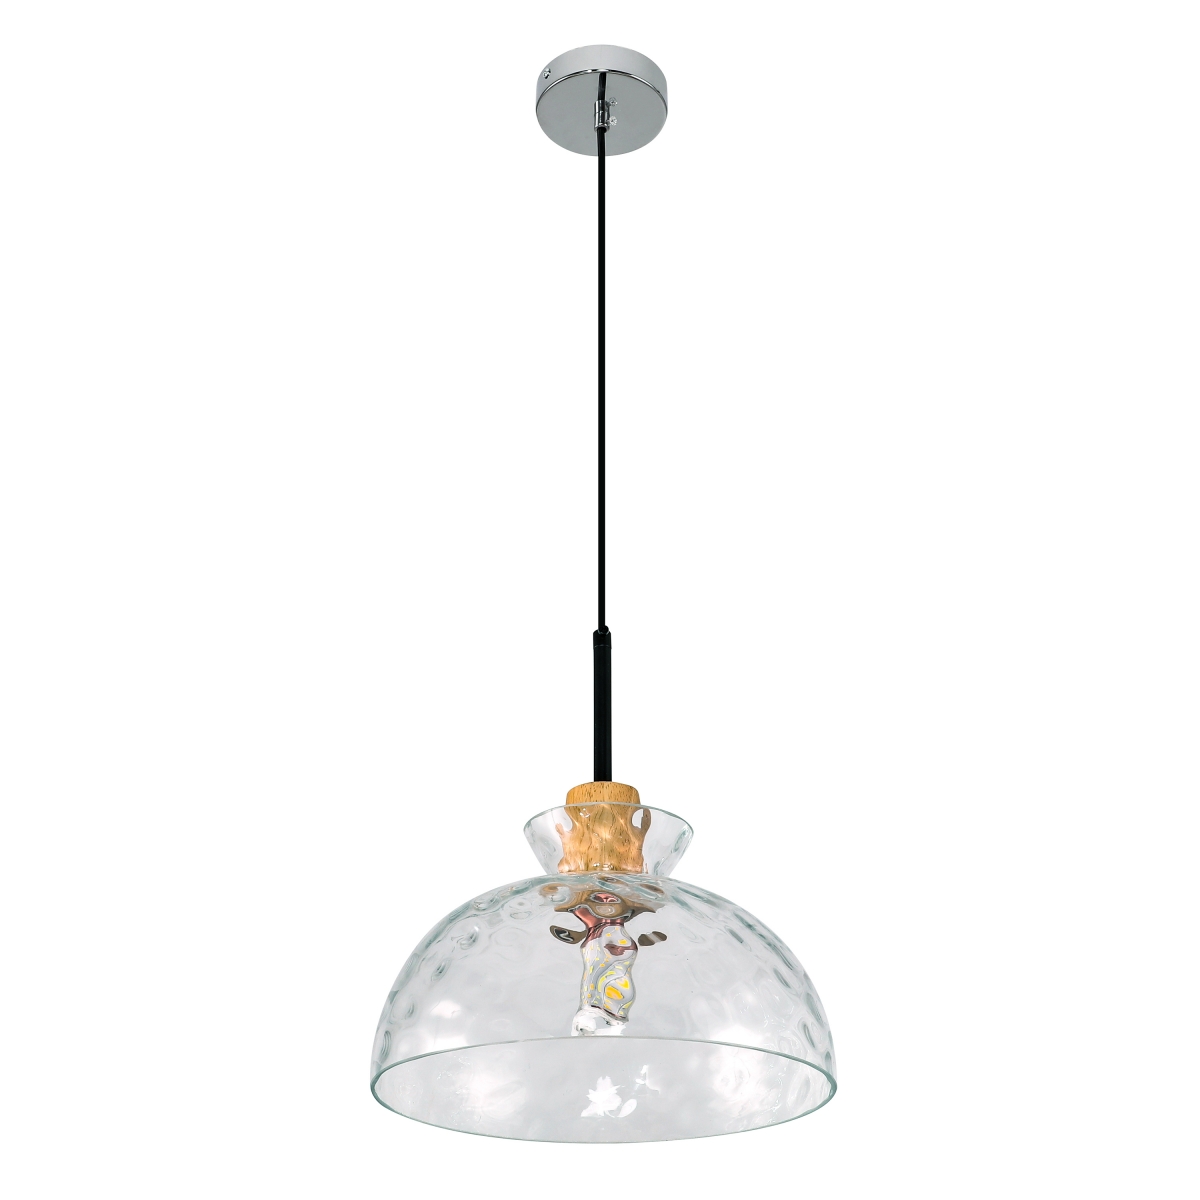 Skandynawski design lampy BJORN średnica 27 cm, przeźroczysty klosz